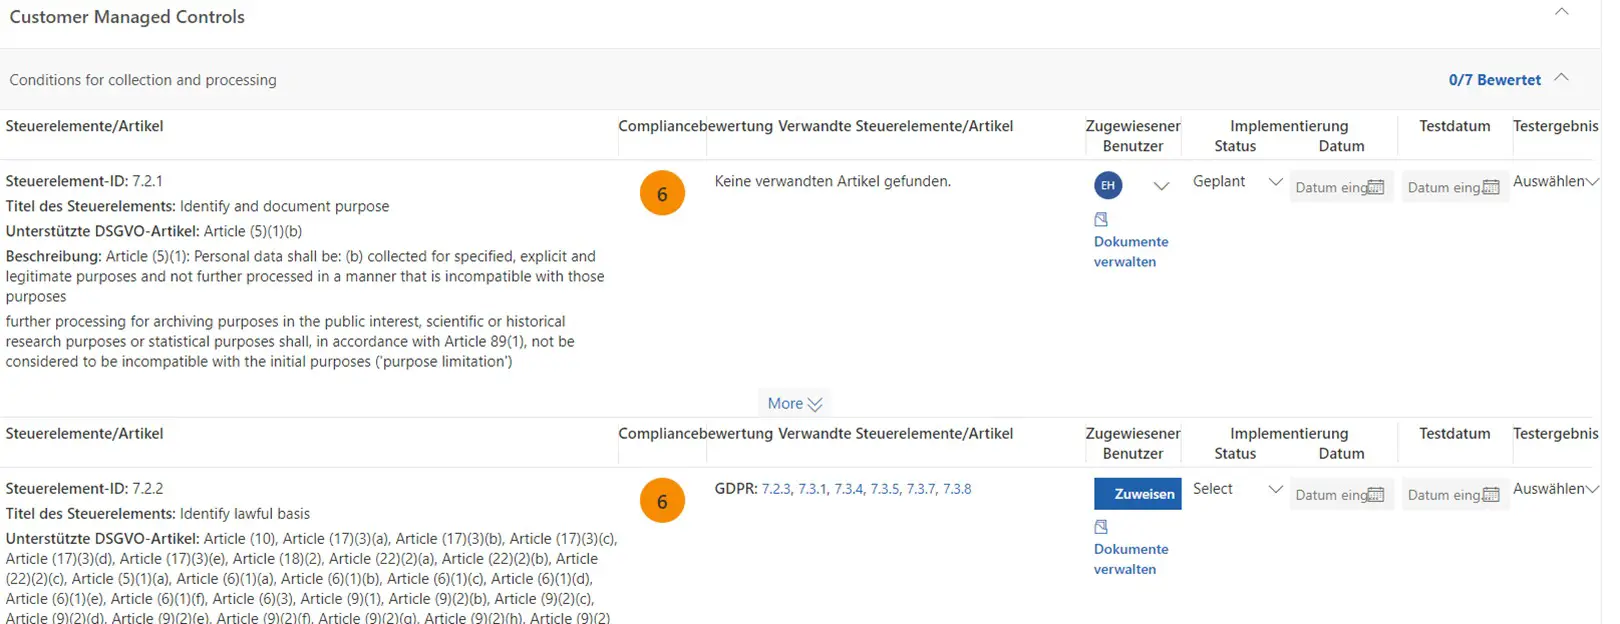 Auszug aus den Kundenverantwortlichen Aufgaben mit Dokumentation im Compliance Manager. Quelle: Screenshot Microsoft.com  